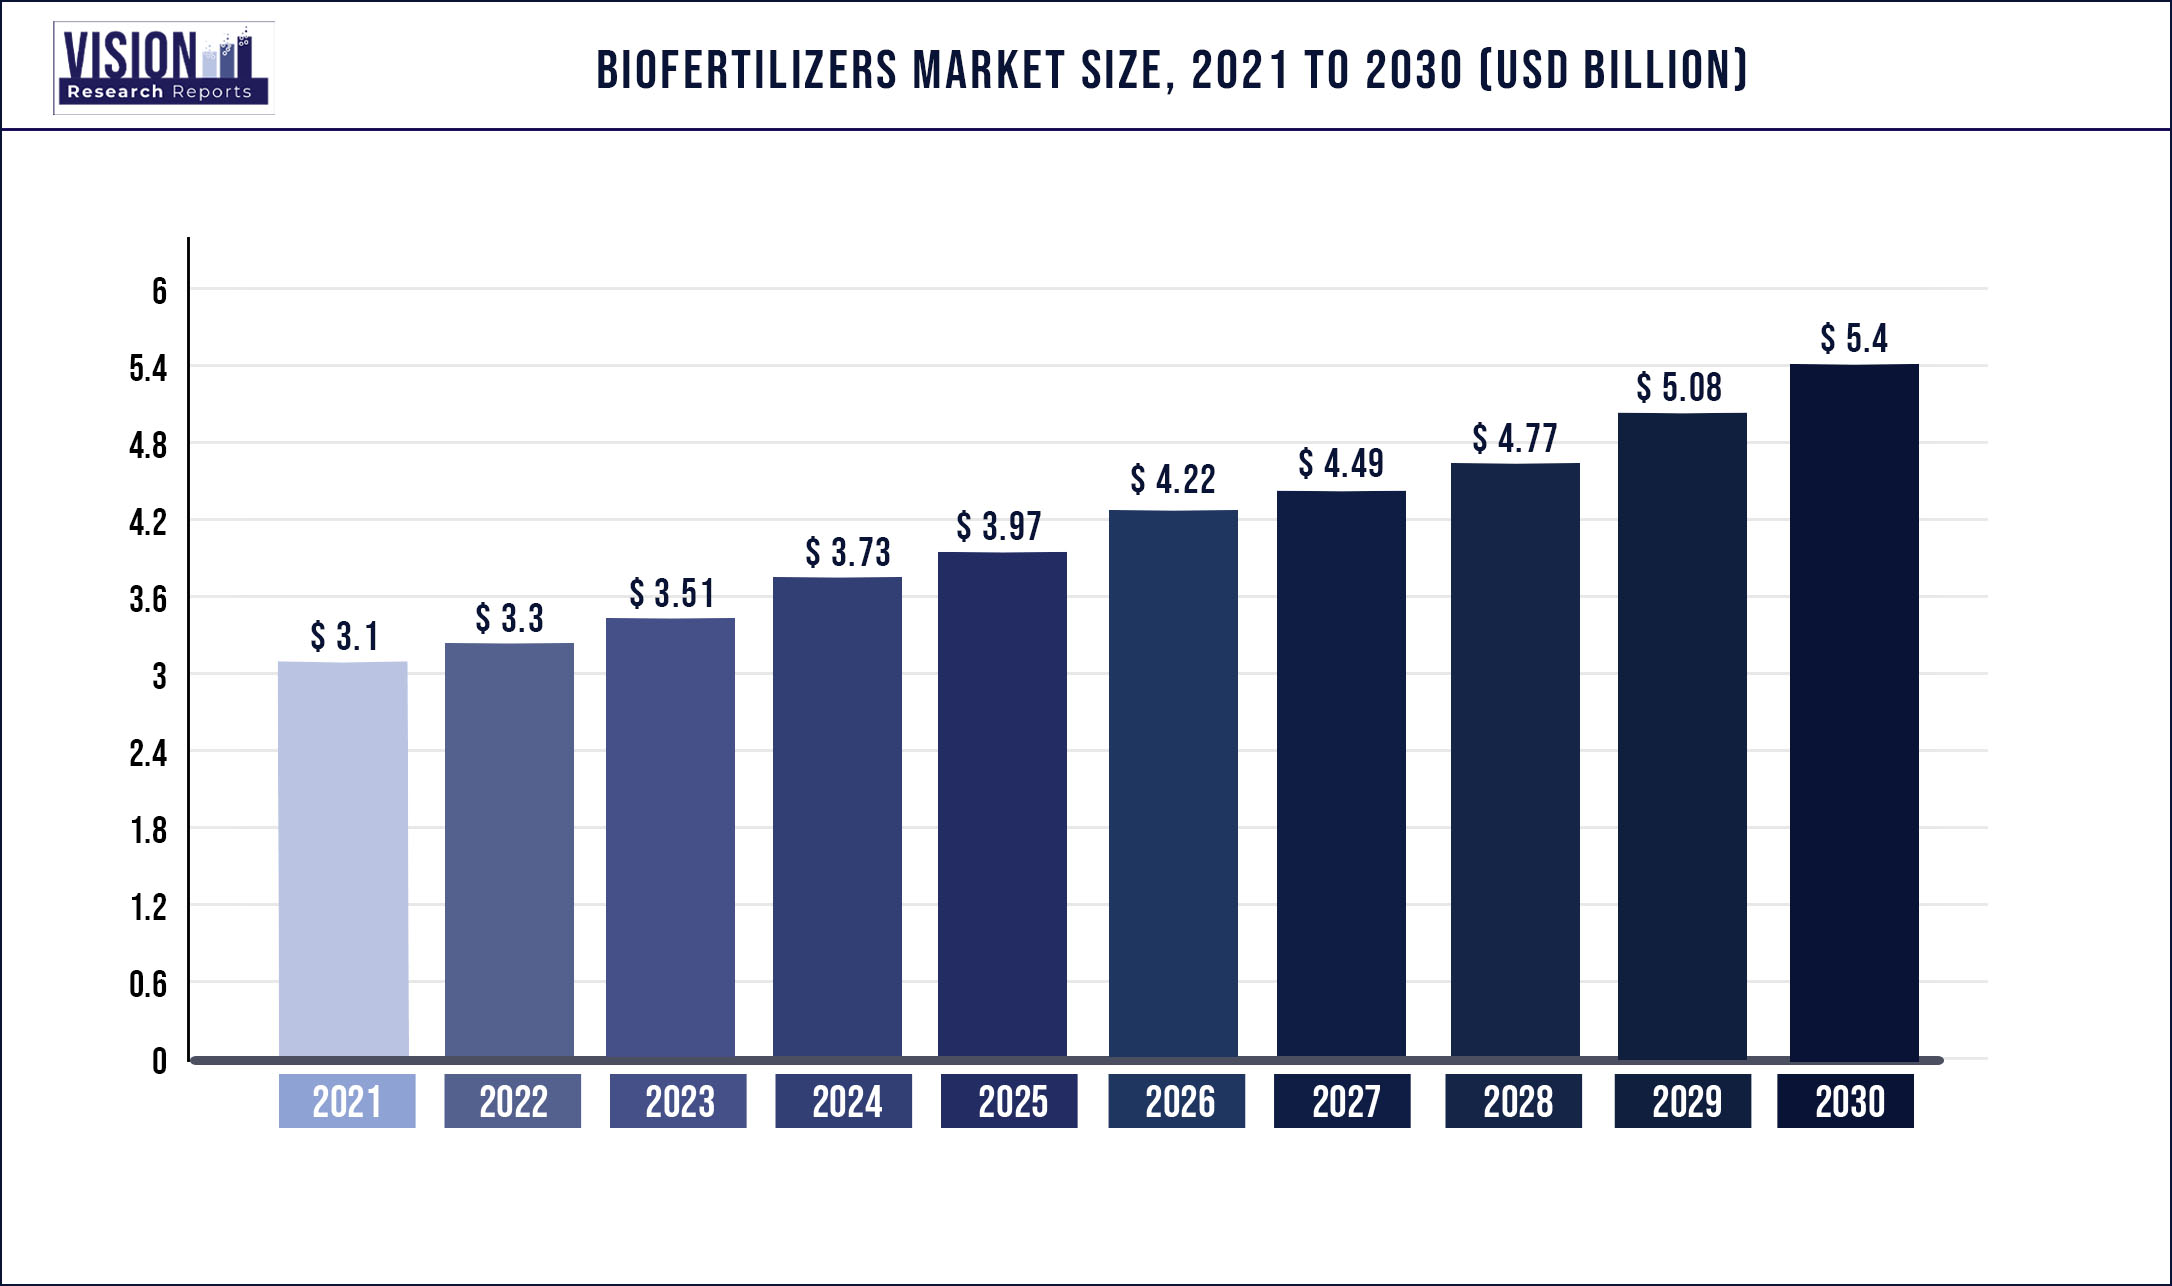 Biofertilizers Market Size 2021 to 2030